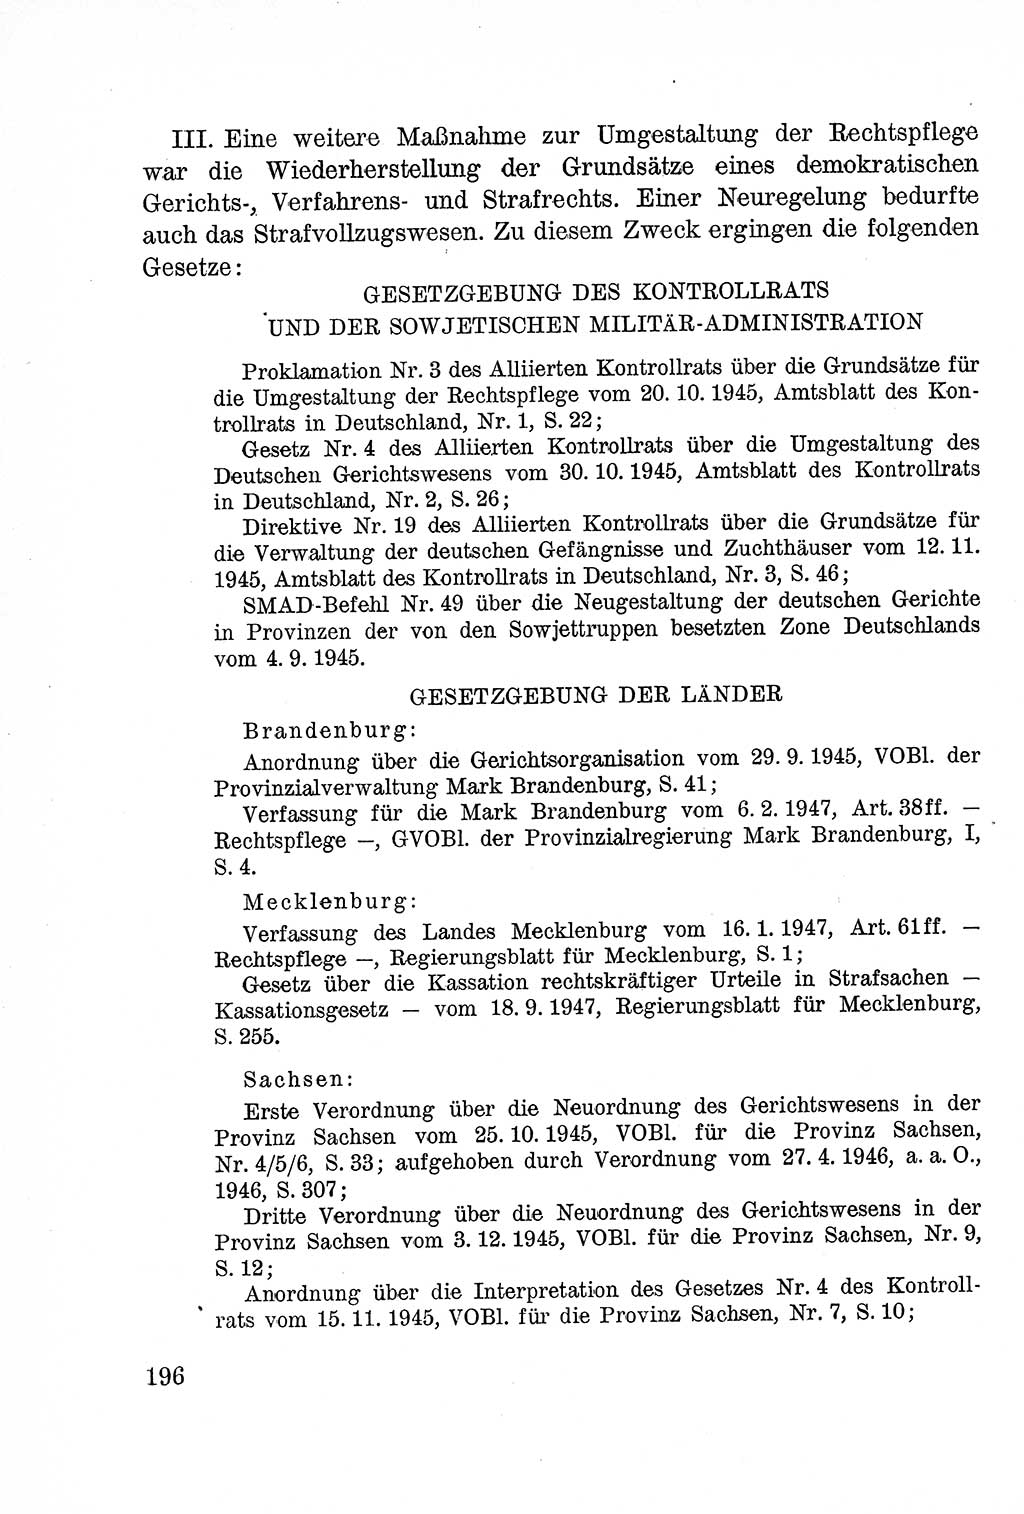 Lehrbuch des Strafrechts der Deutschen Demokratischen Republik (DDR), Allgemeiner Teil 1957, Seite 196 (Lb. Strafr. DDR AT 1957, S. 196)